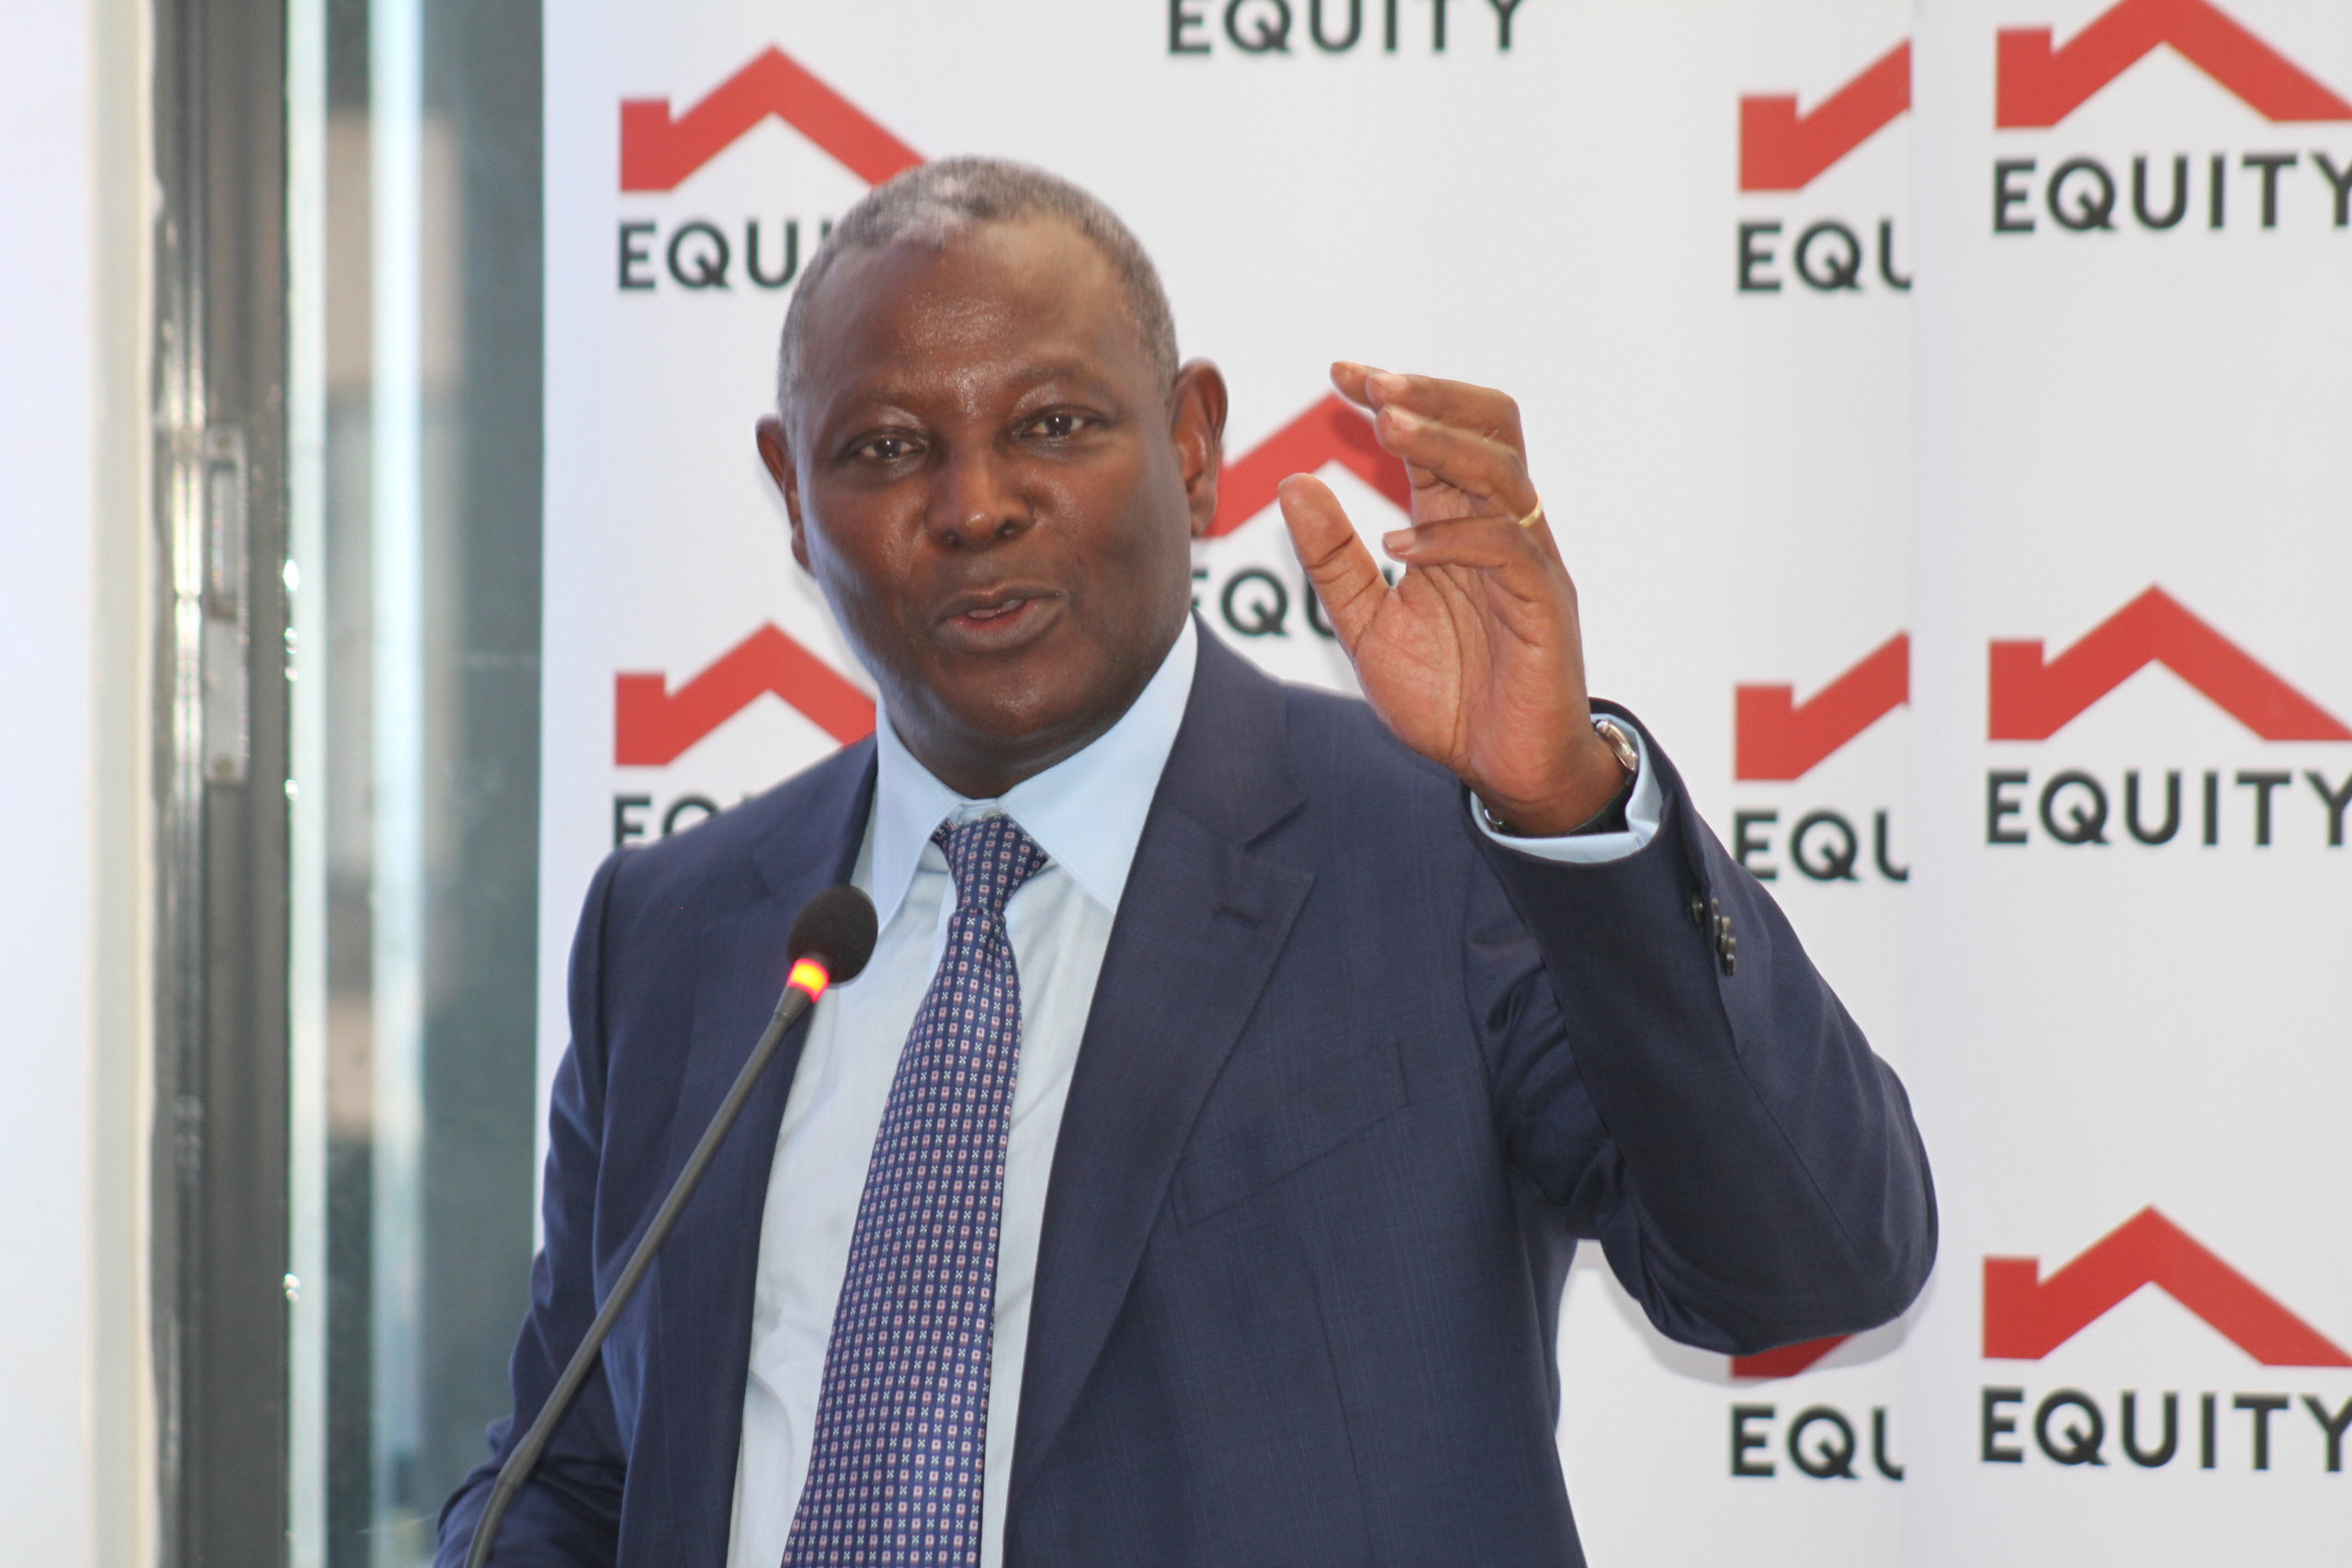 Equity C.E.O James Mwangi